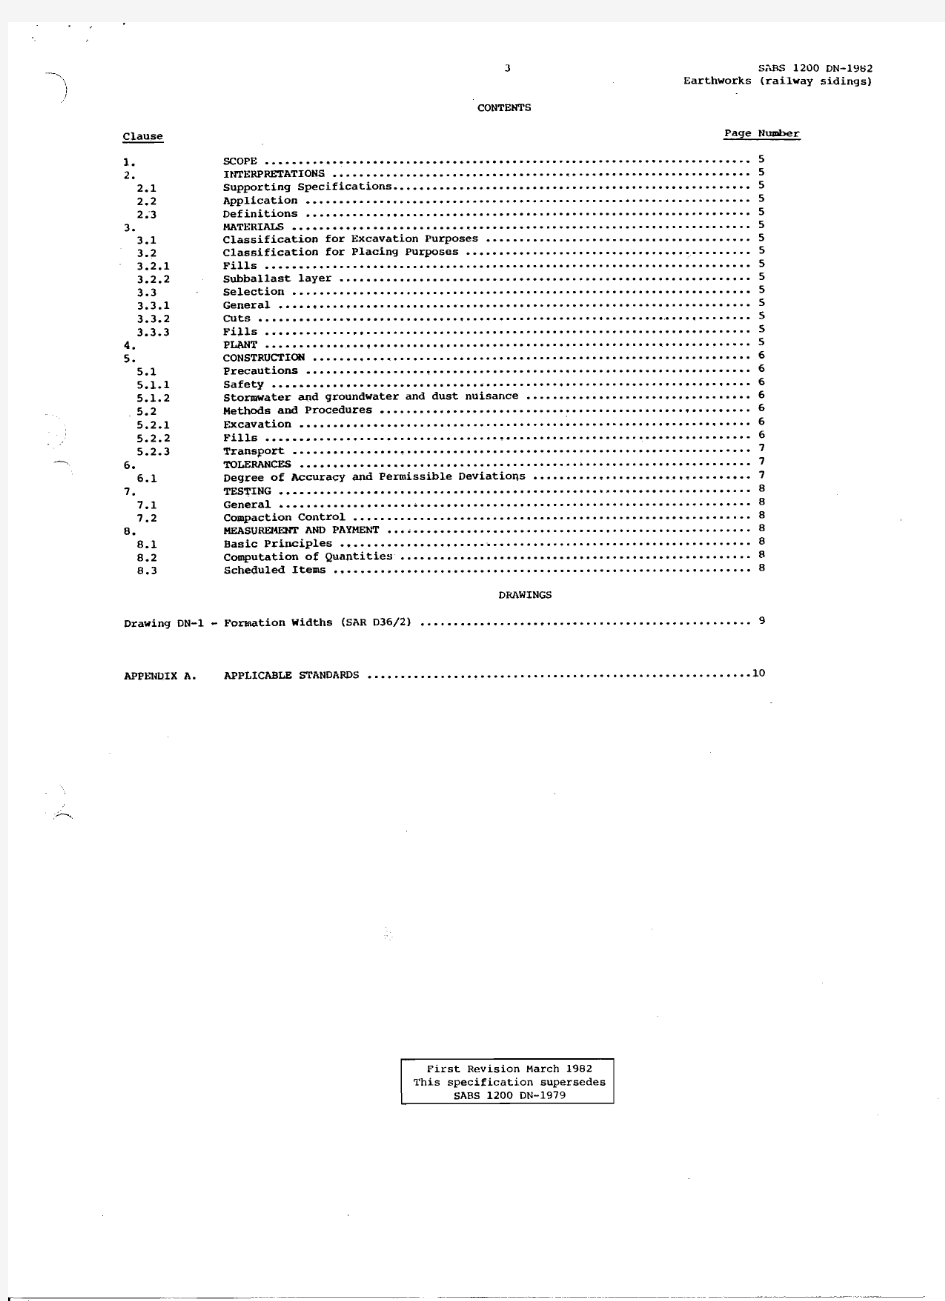 SABS 1200 DN-1982 EARTHWORKS (RAILWAY SIDINGS)